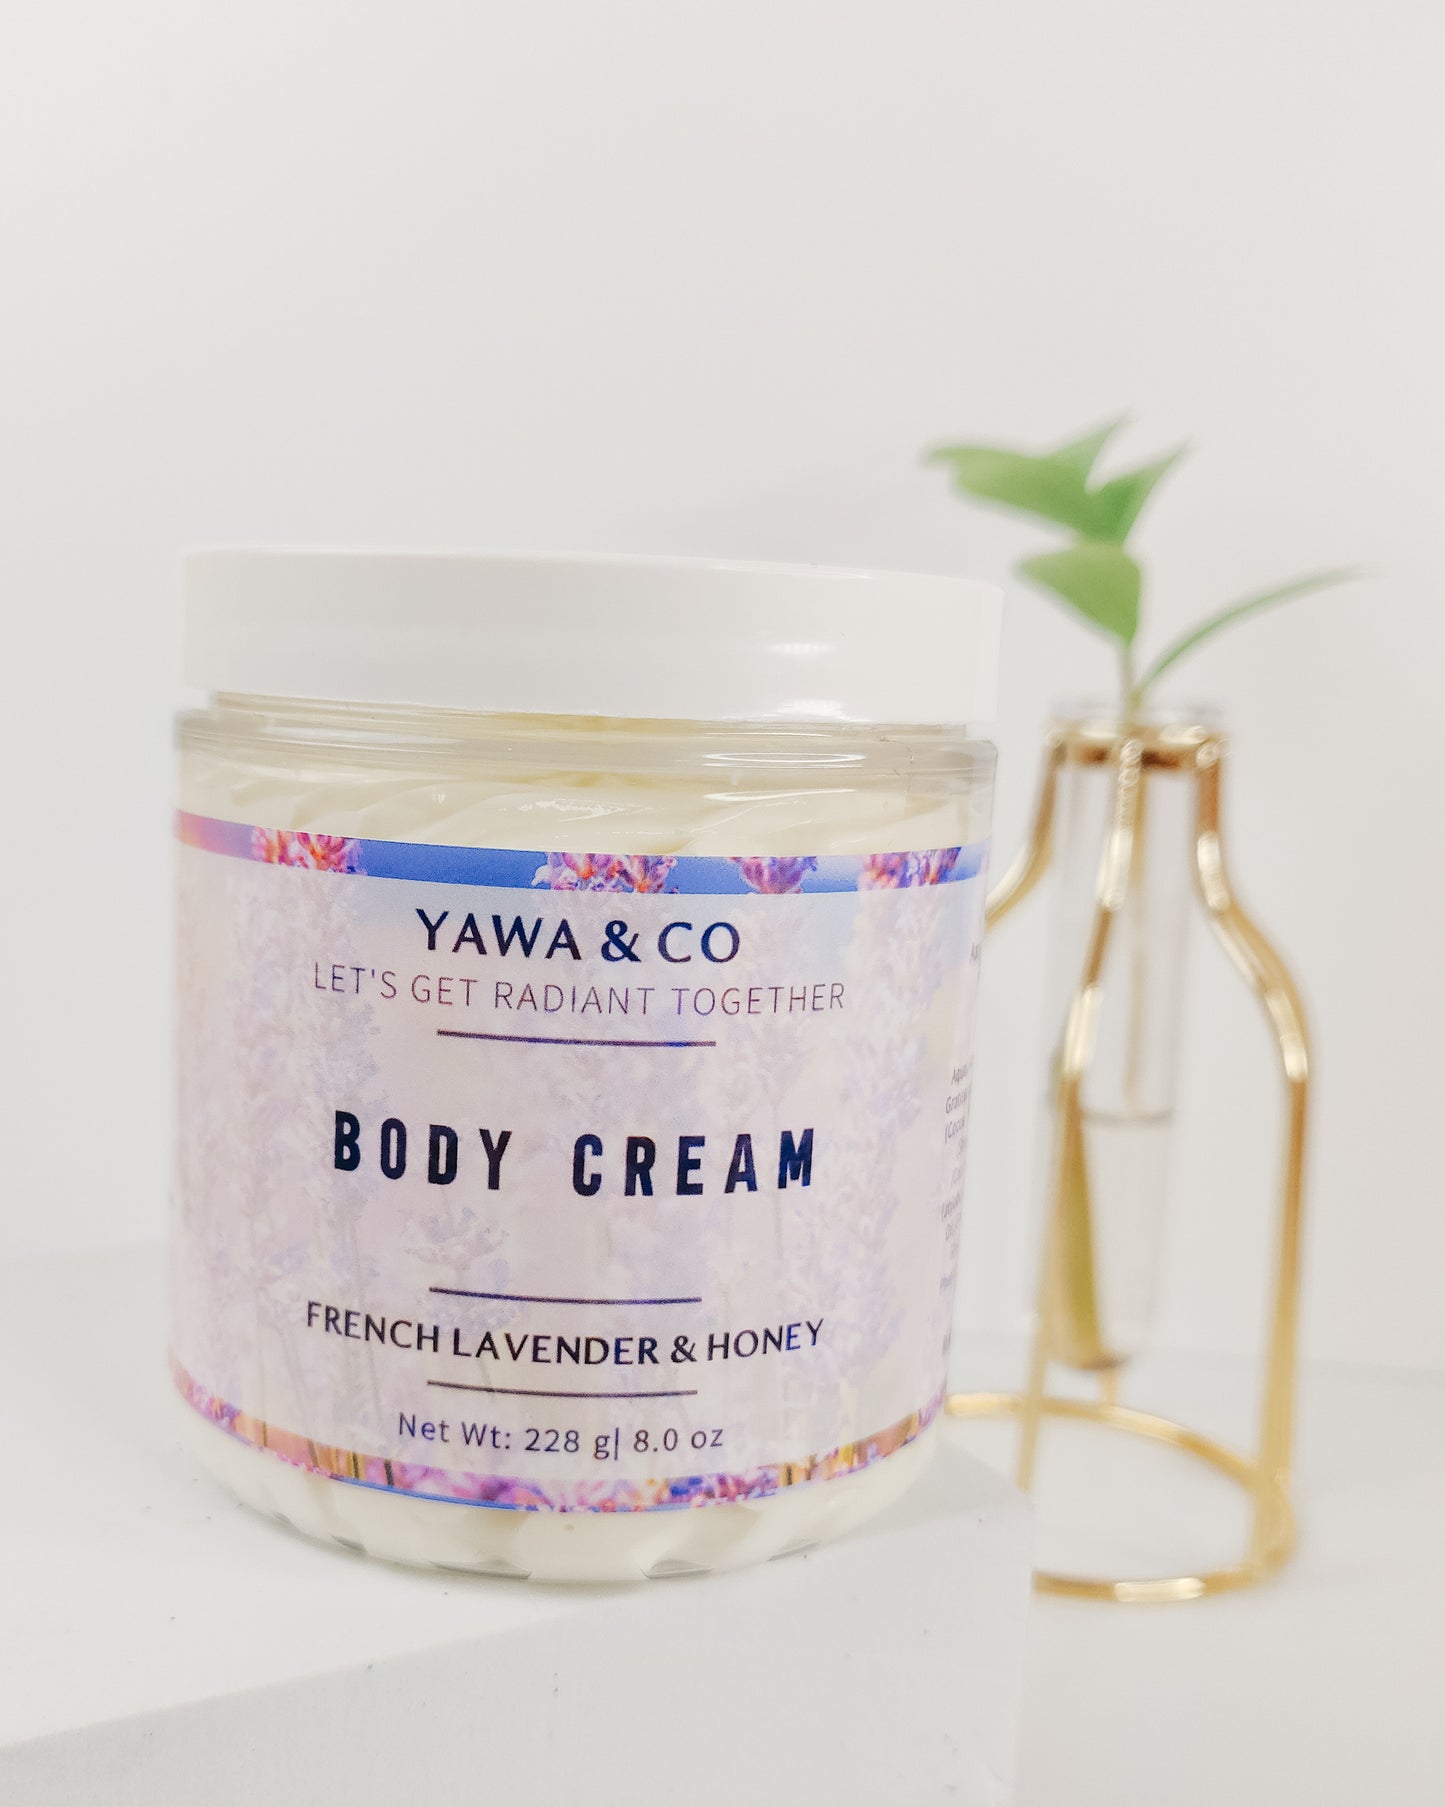 French Lavender & Honey Body Cream